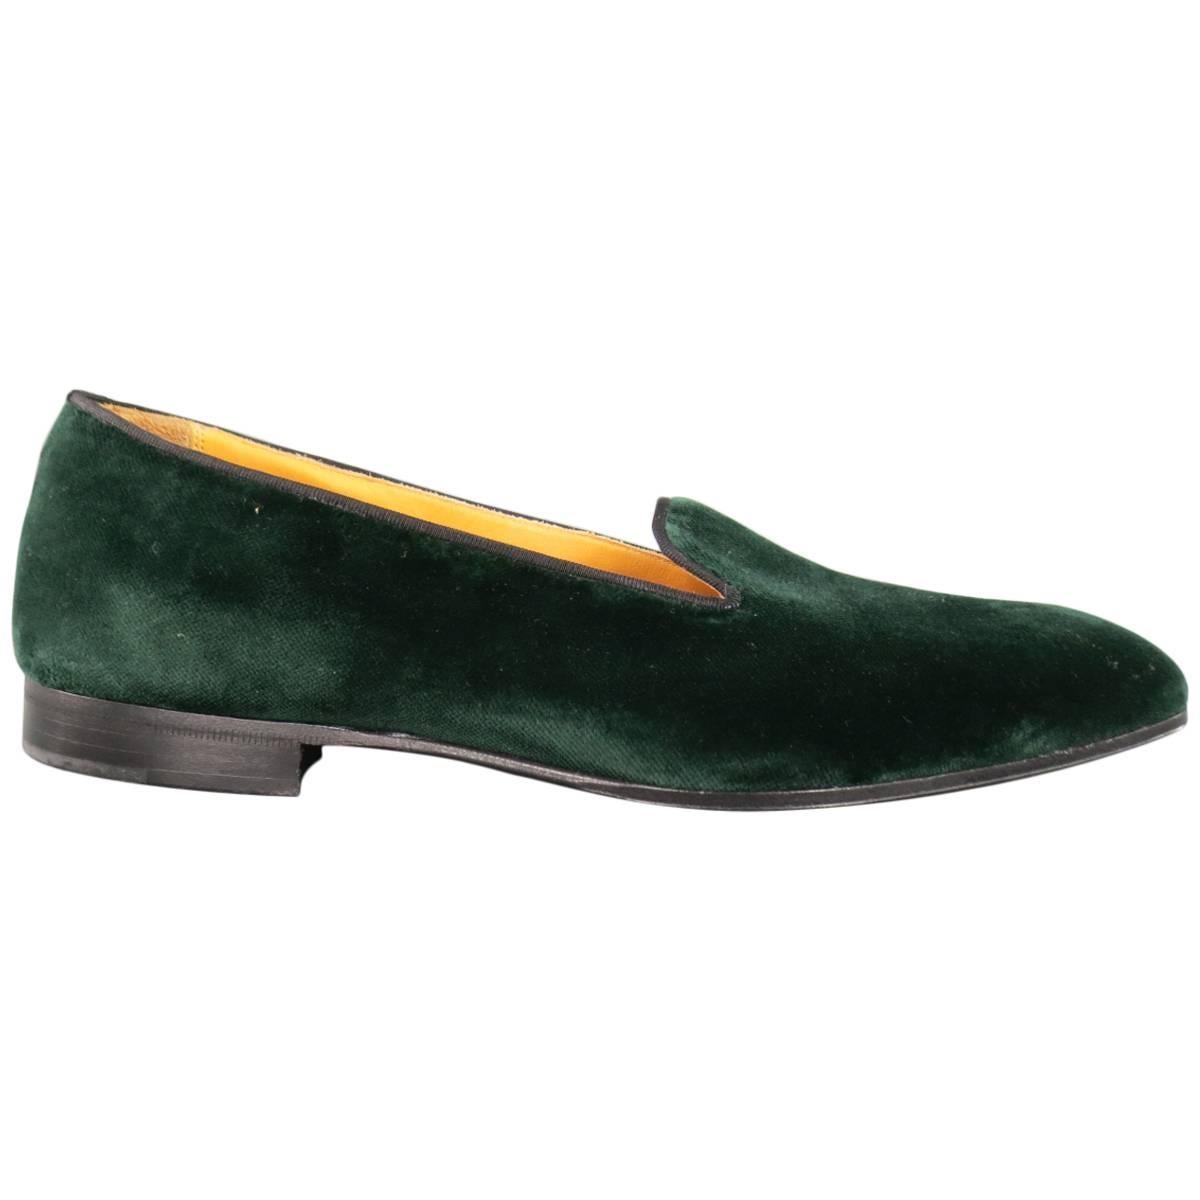 GAZIANO & GIRLING Size 9 Forest Green Velvet Slipper Loafers